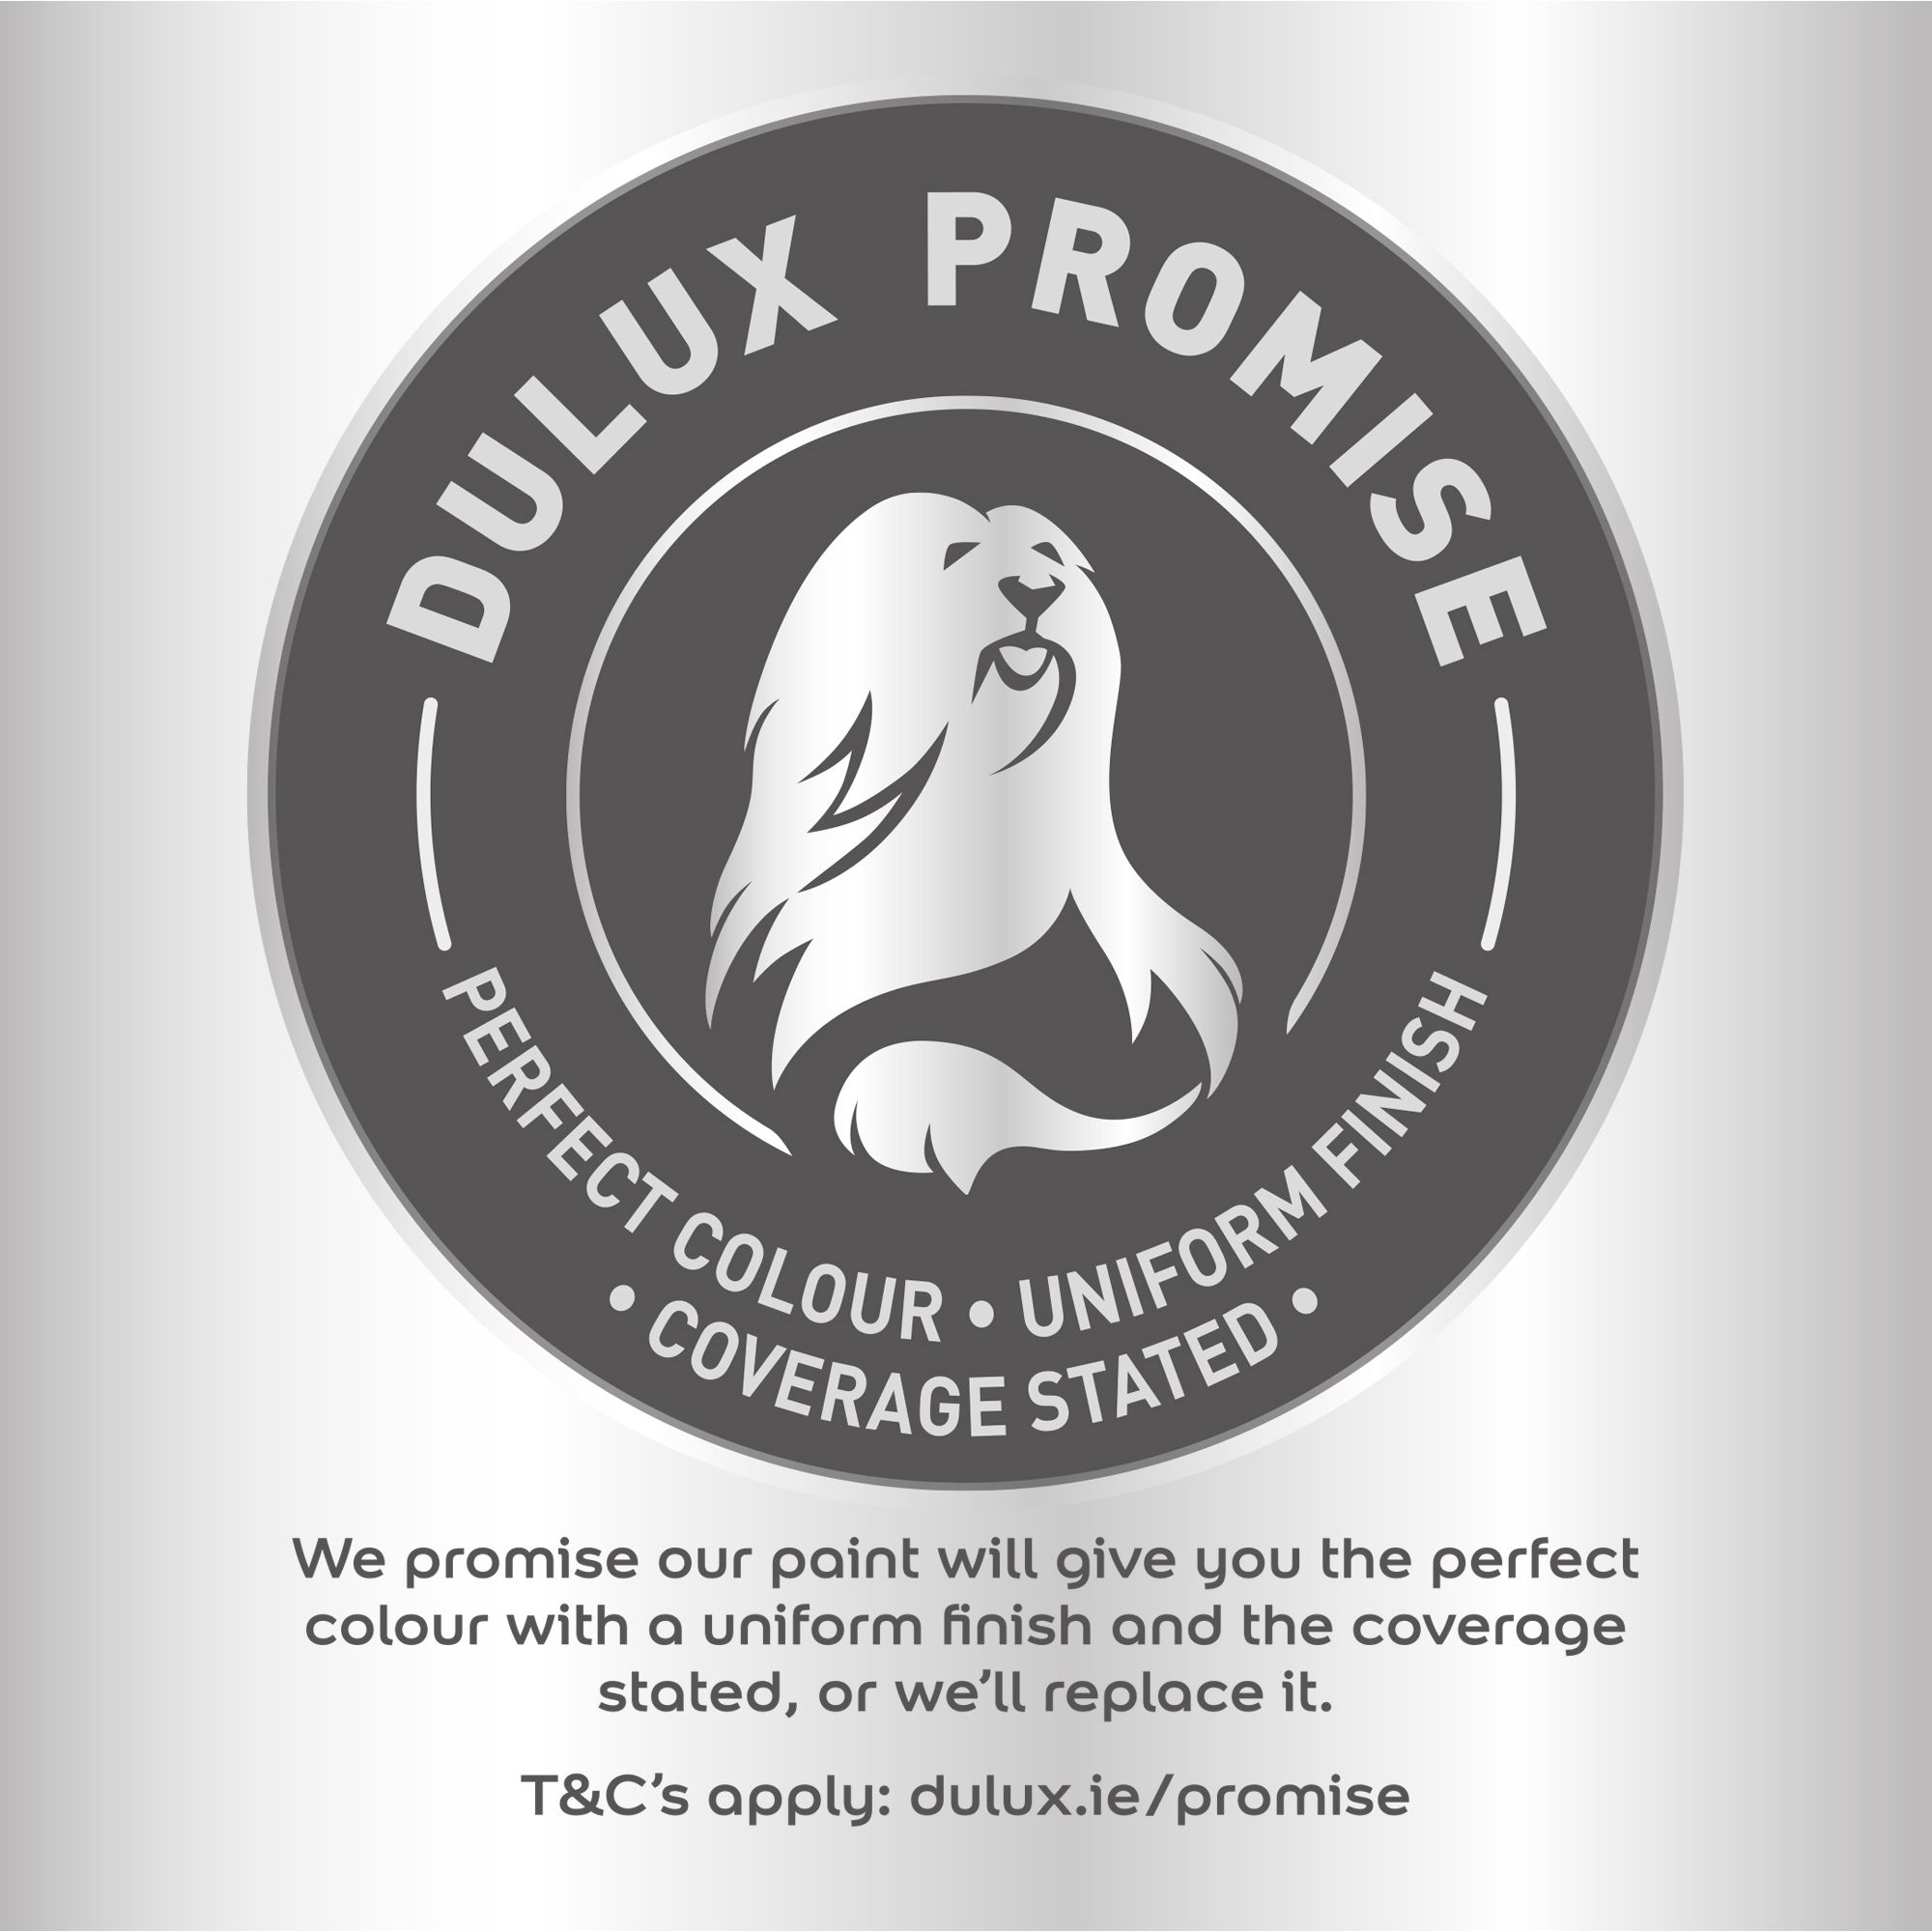 Dulux Easycare Suspense Flat matt Emulsion paint, 2.5L